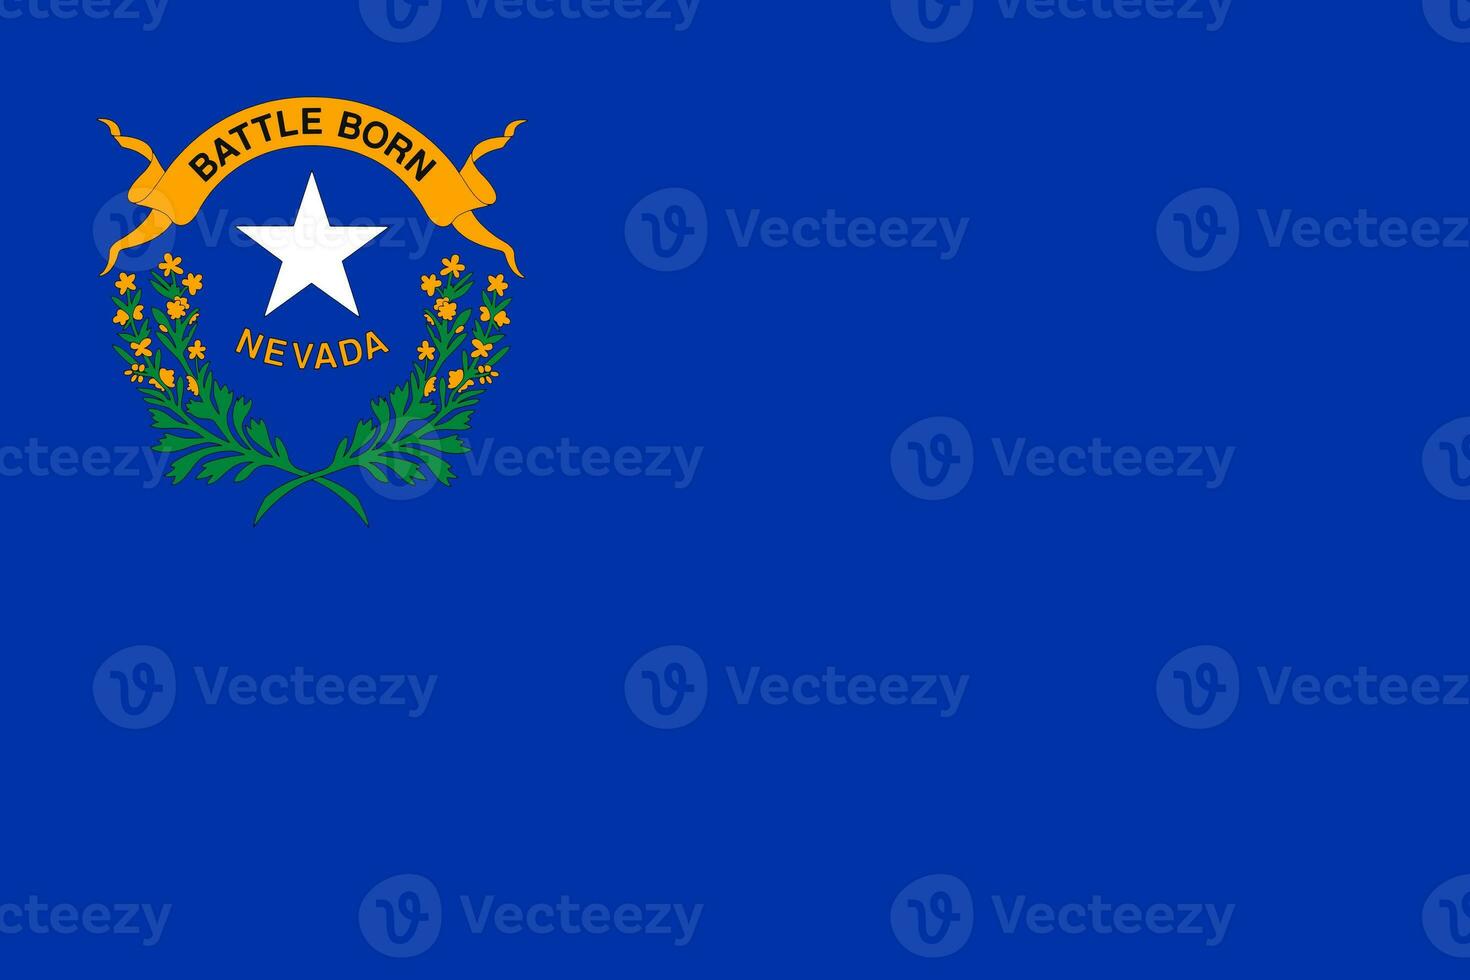 el oficial Actual bandera de nosotros estado bandera de Nevada. estado bandera de Nevada. ilustración. foto